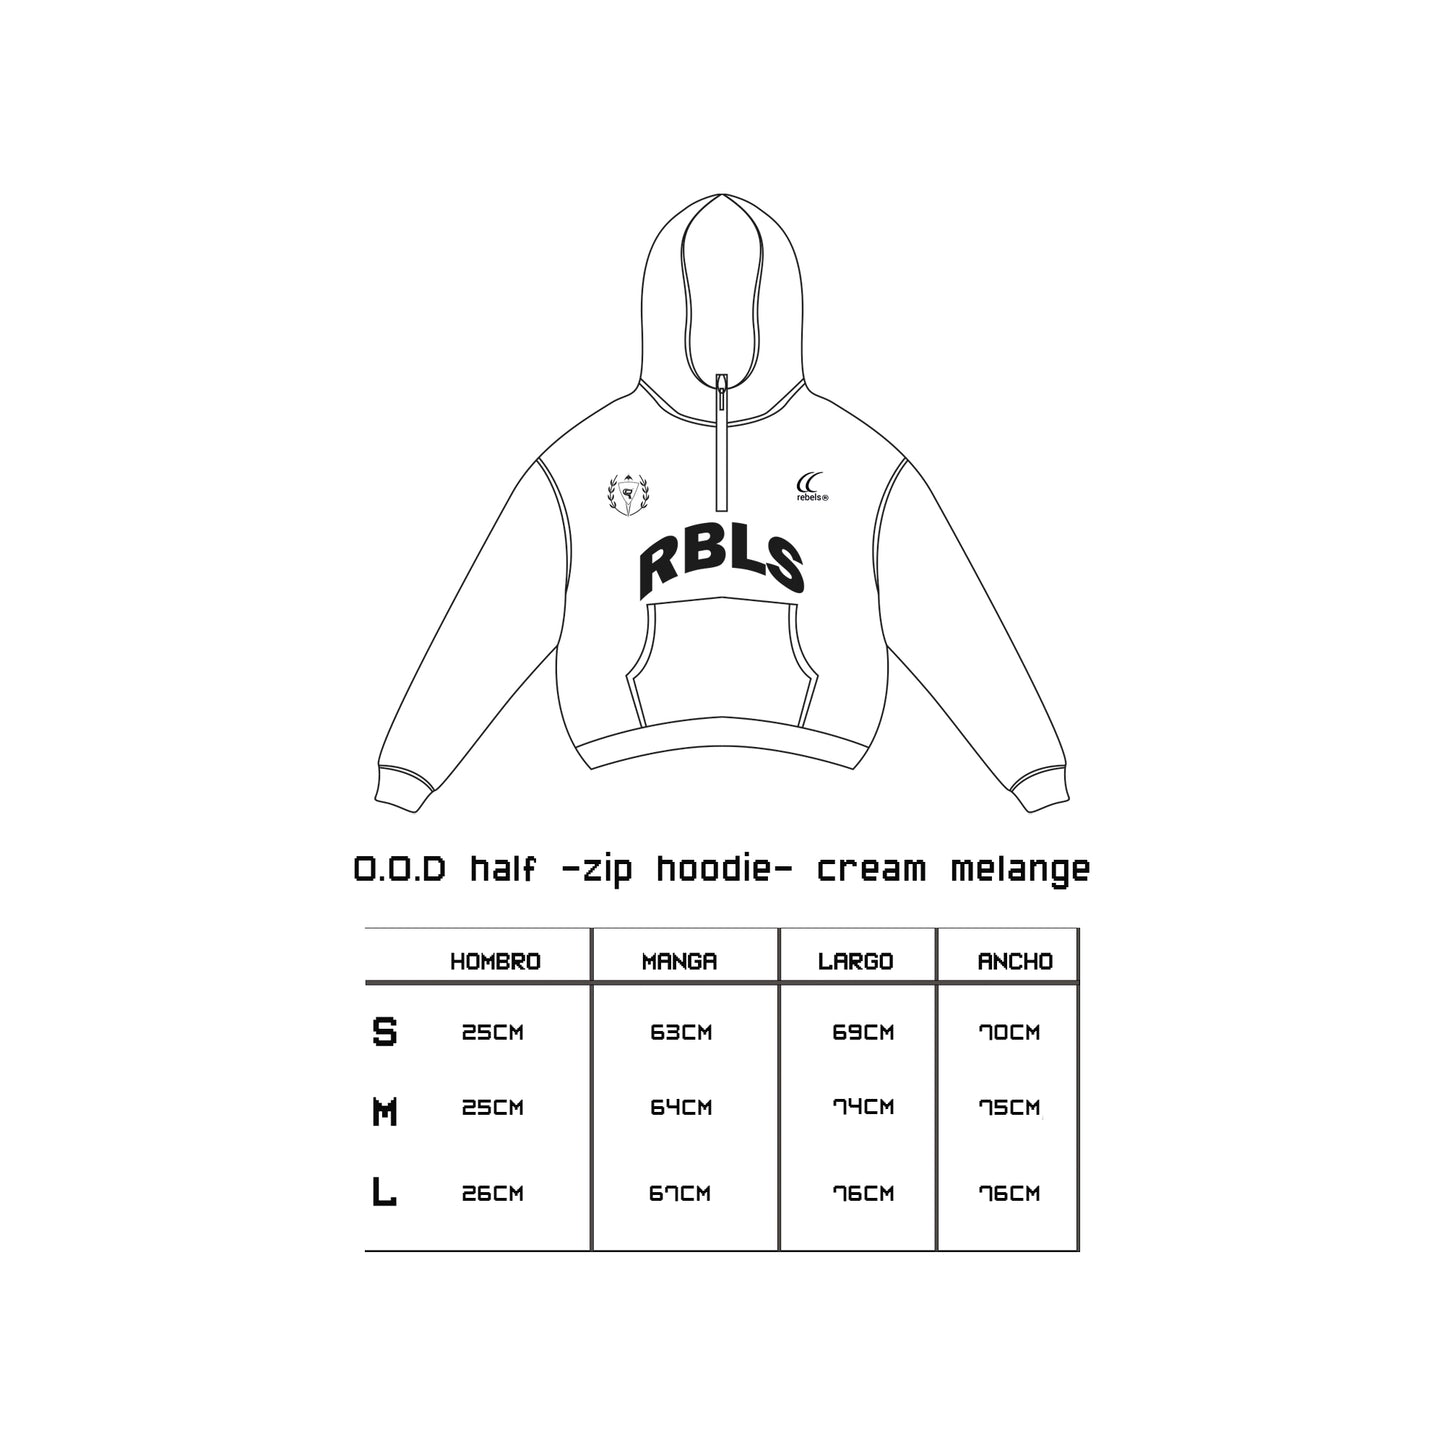 O.O.D half -zip hoodie- cream melange